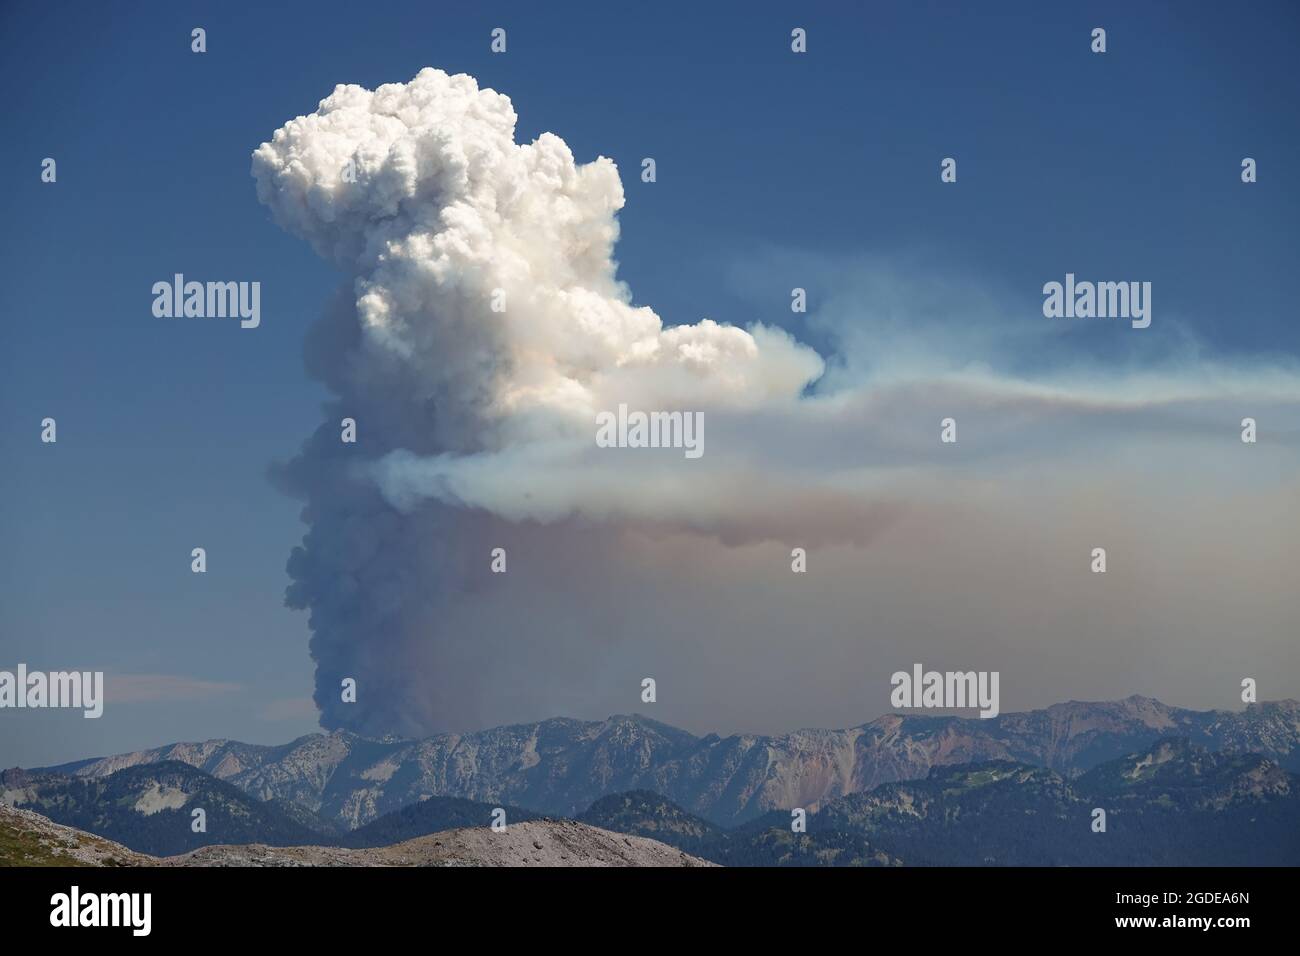 Nuage de Flammagénitus (pyrocumulus) provenant du feu de forêt de Schneider Springs dans l'État de Washington, États-Unis, août 2021 Banque D'Images